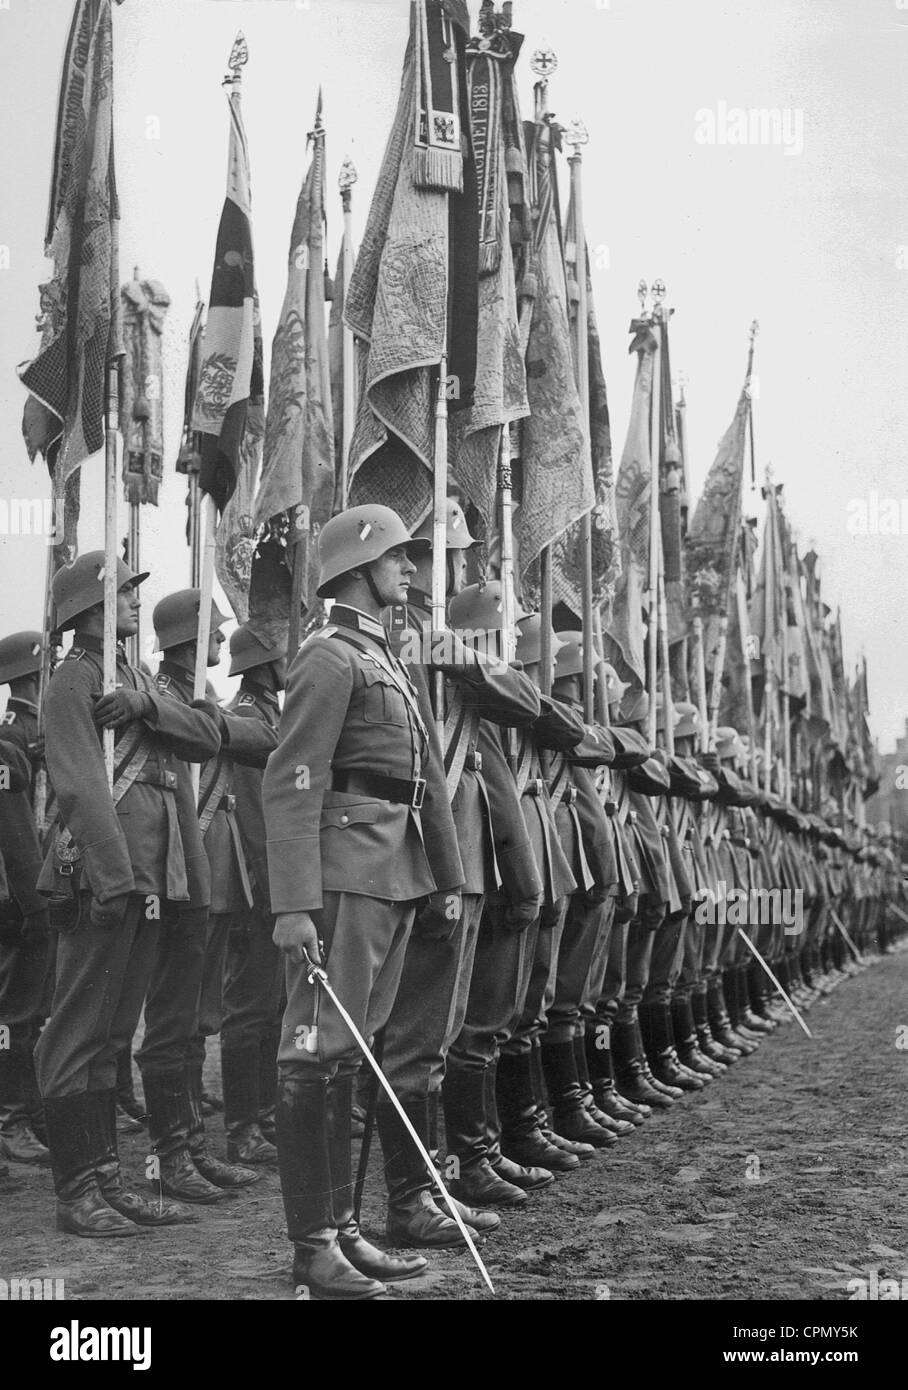 Las banderas del ejército imperial en héroes del día conmemorativo, 1935 Foto de stock